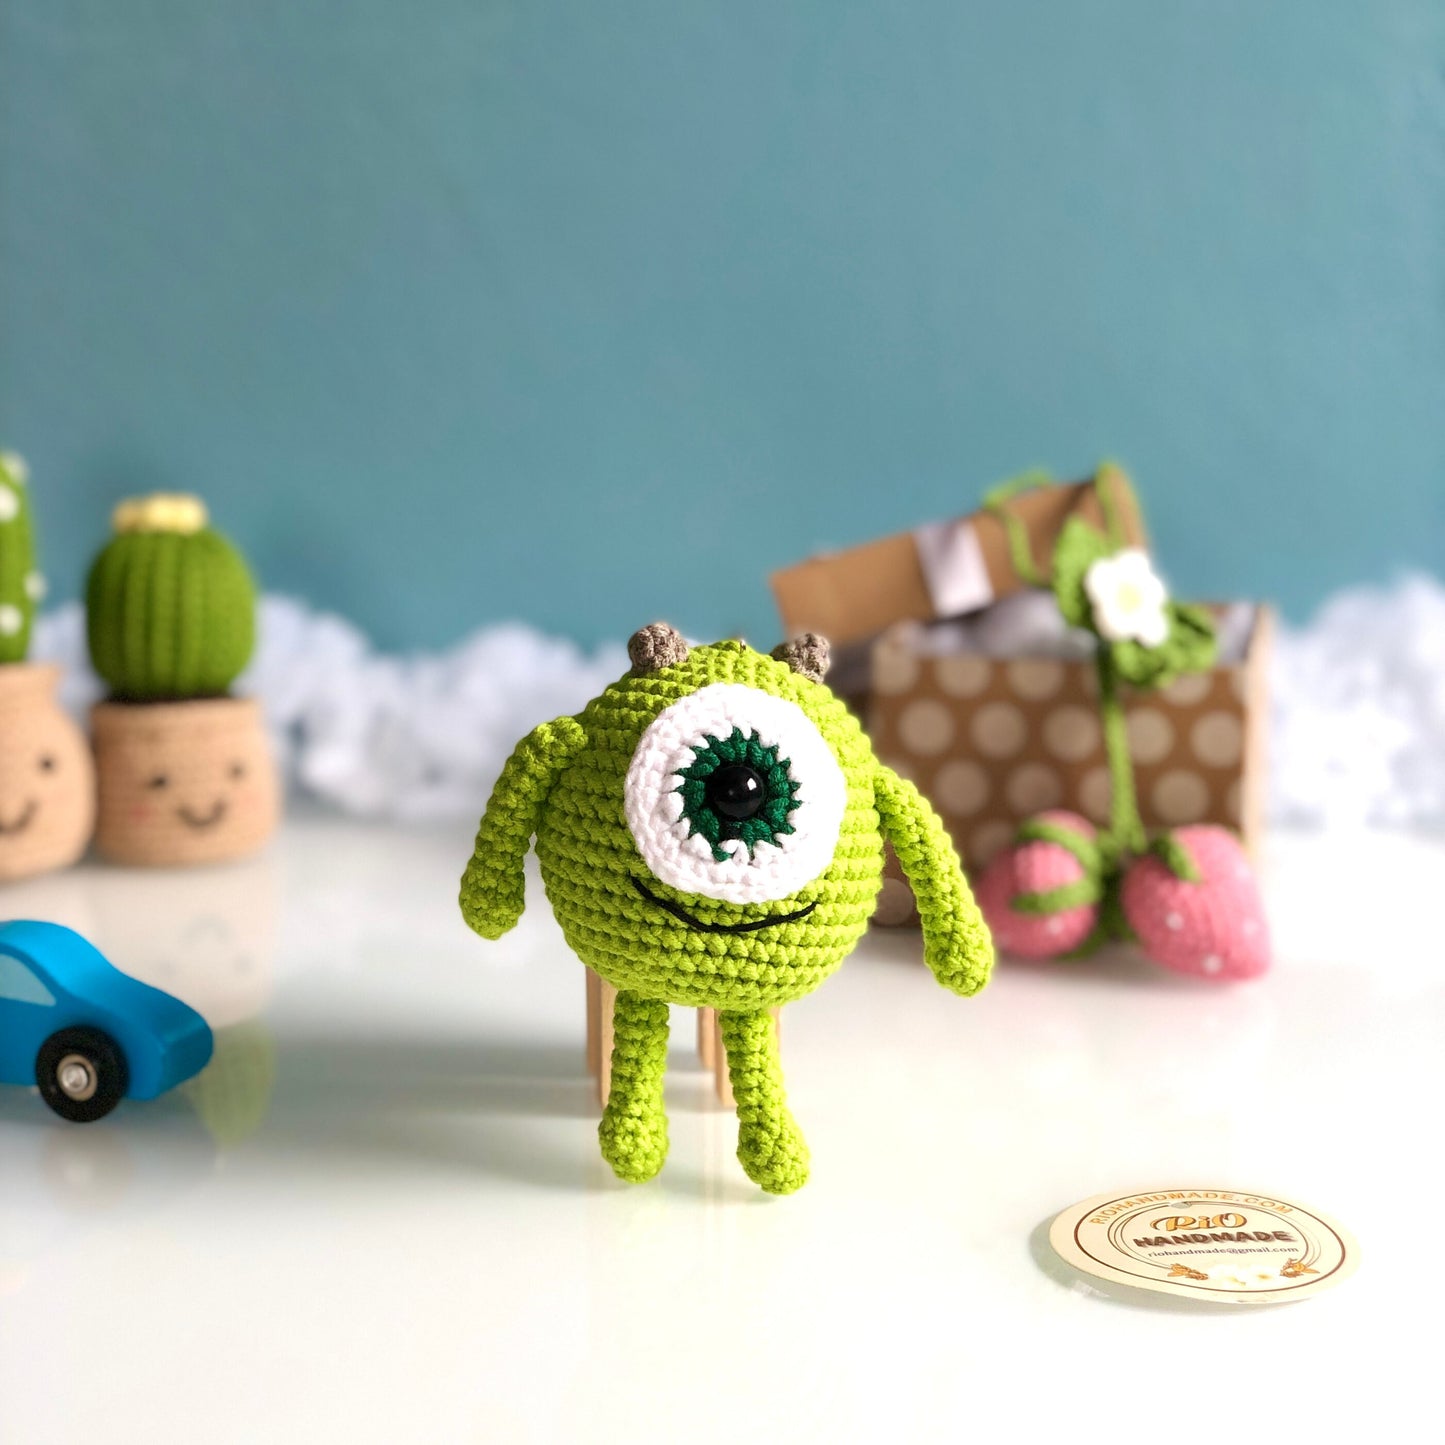 Handmade monster crochet keychain, amigurumi Mike Wazowski, inspired monster plushie toy, cute gift